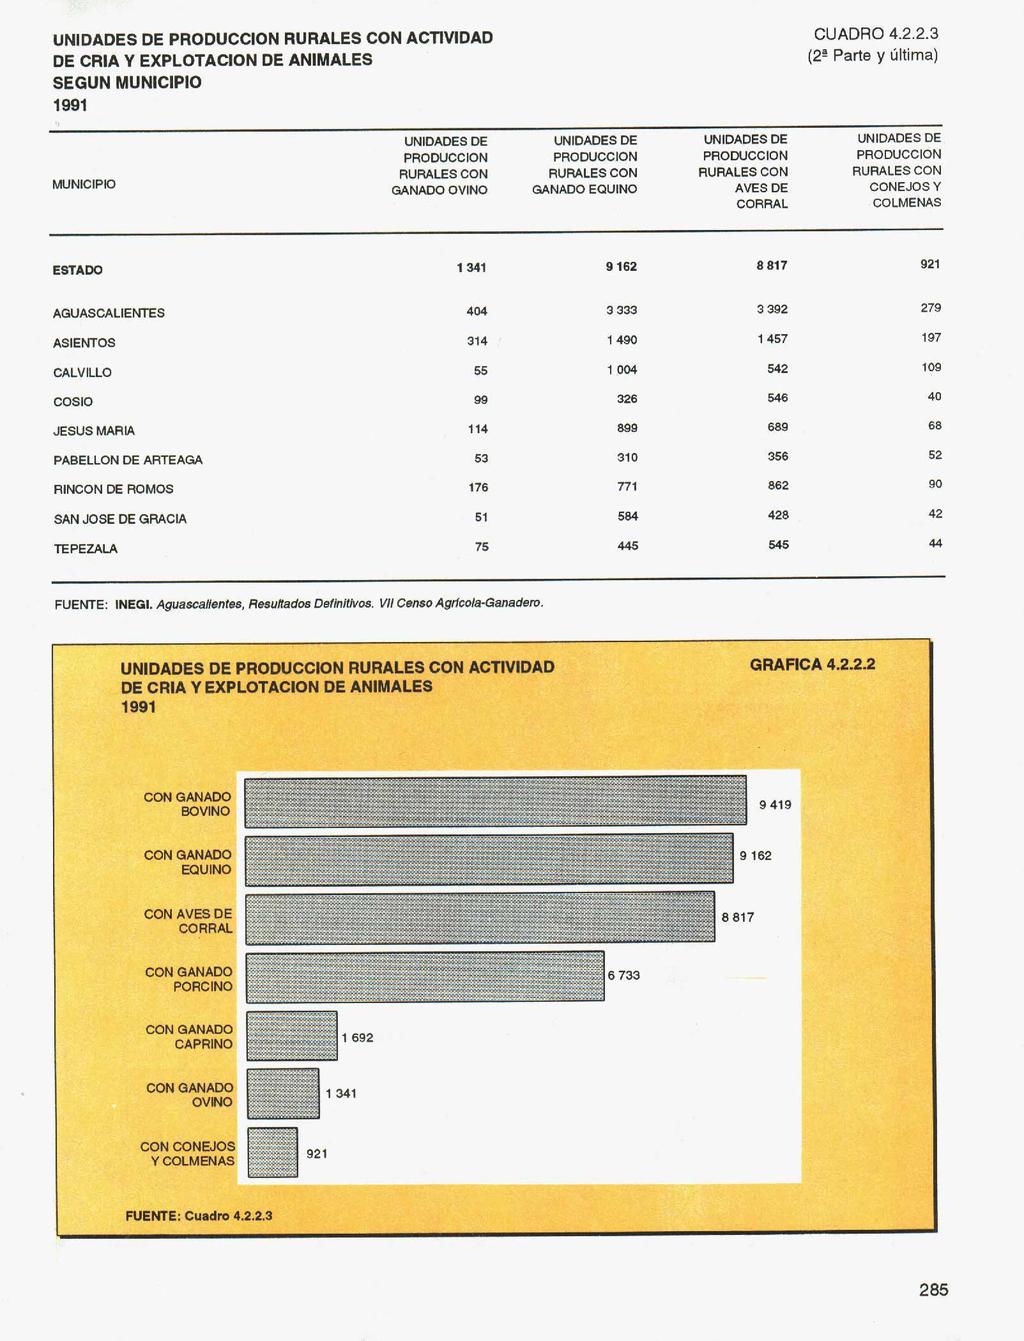 UNIDADES DE PRODUION RURALES ON ATIVIDAD DE RlA Y EXPLOTAION DE ANIMALES SEGUN MUNIIPIO 1991 UADRO 4.2.